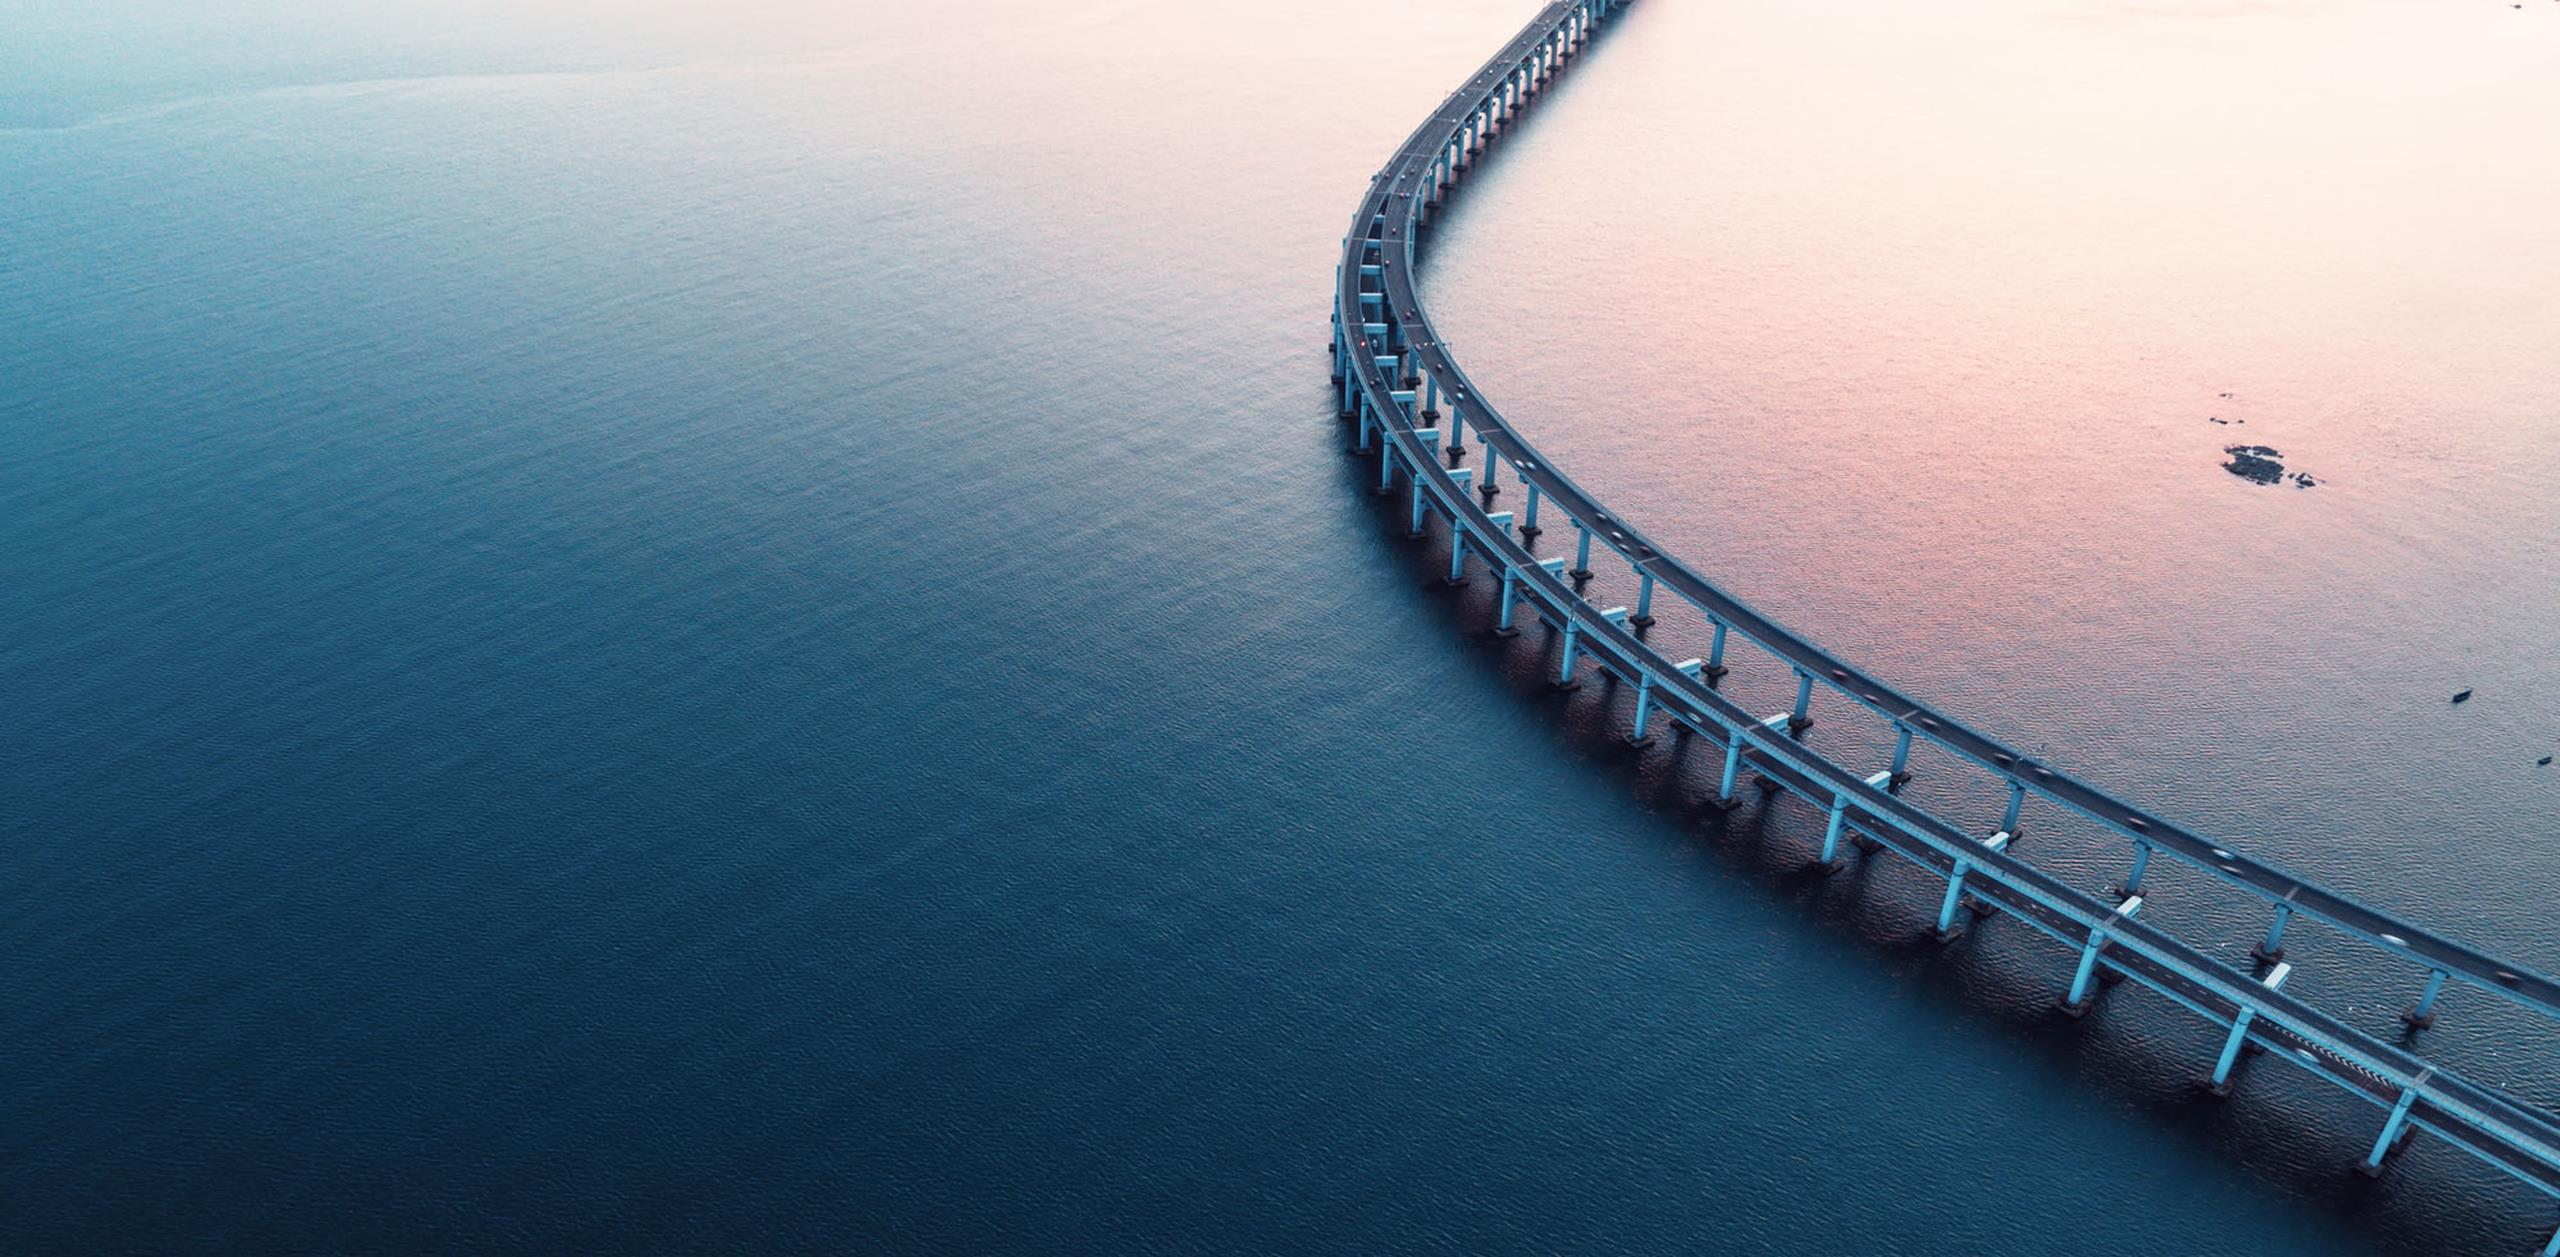 Bridge over ocean